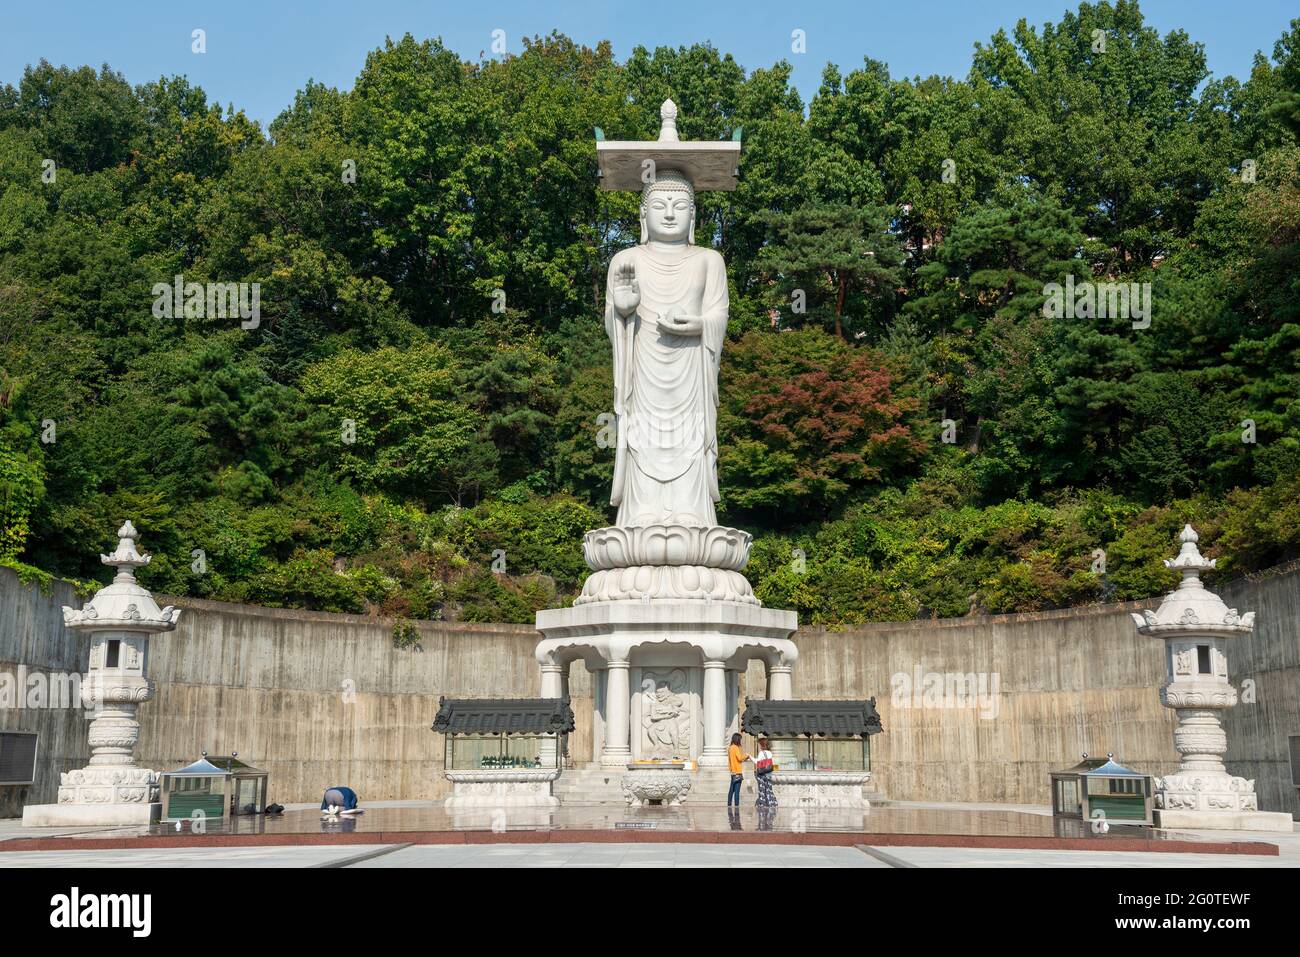 Statua di Buddha sullo sfondo di alberi verdi nel tempio di Bongeunsa nel distretto di Gangnam a Seoul, Corea del Sud. E' una popolare attrazione turistica dell'Asia. Foto Stock